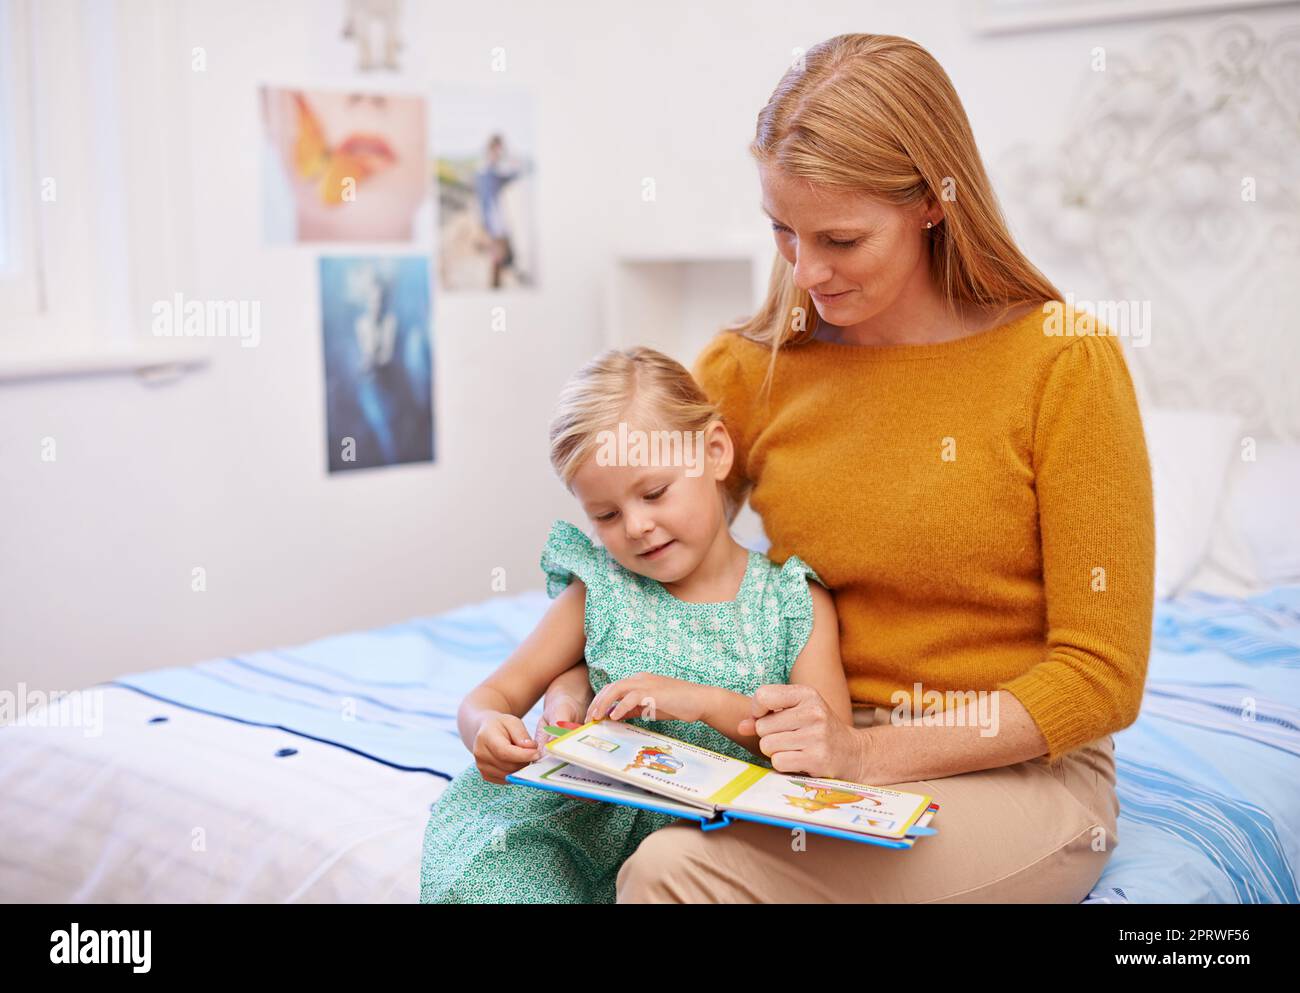 Ama le immagini, una madre che legge un libro alla bambina nella sua camera da letto. Foto Stock